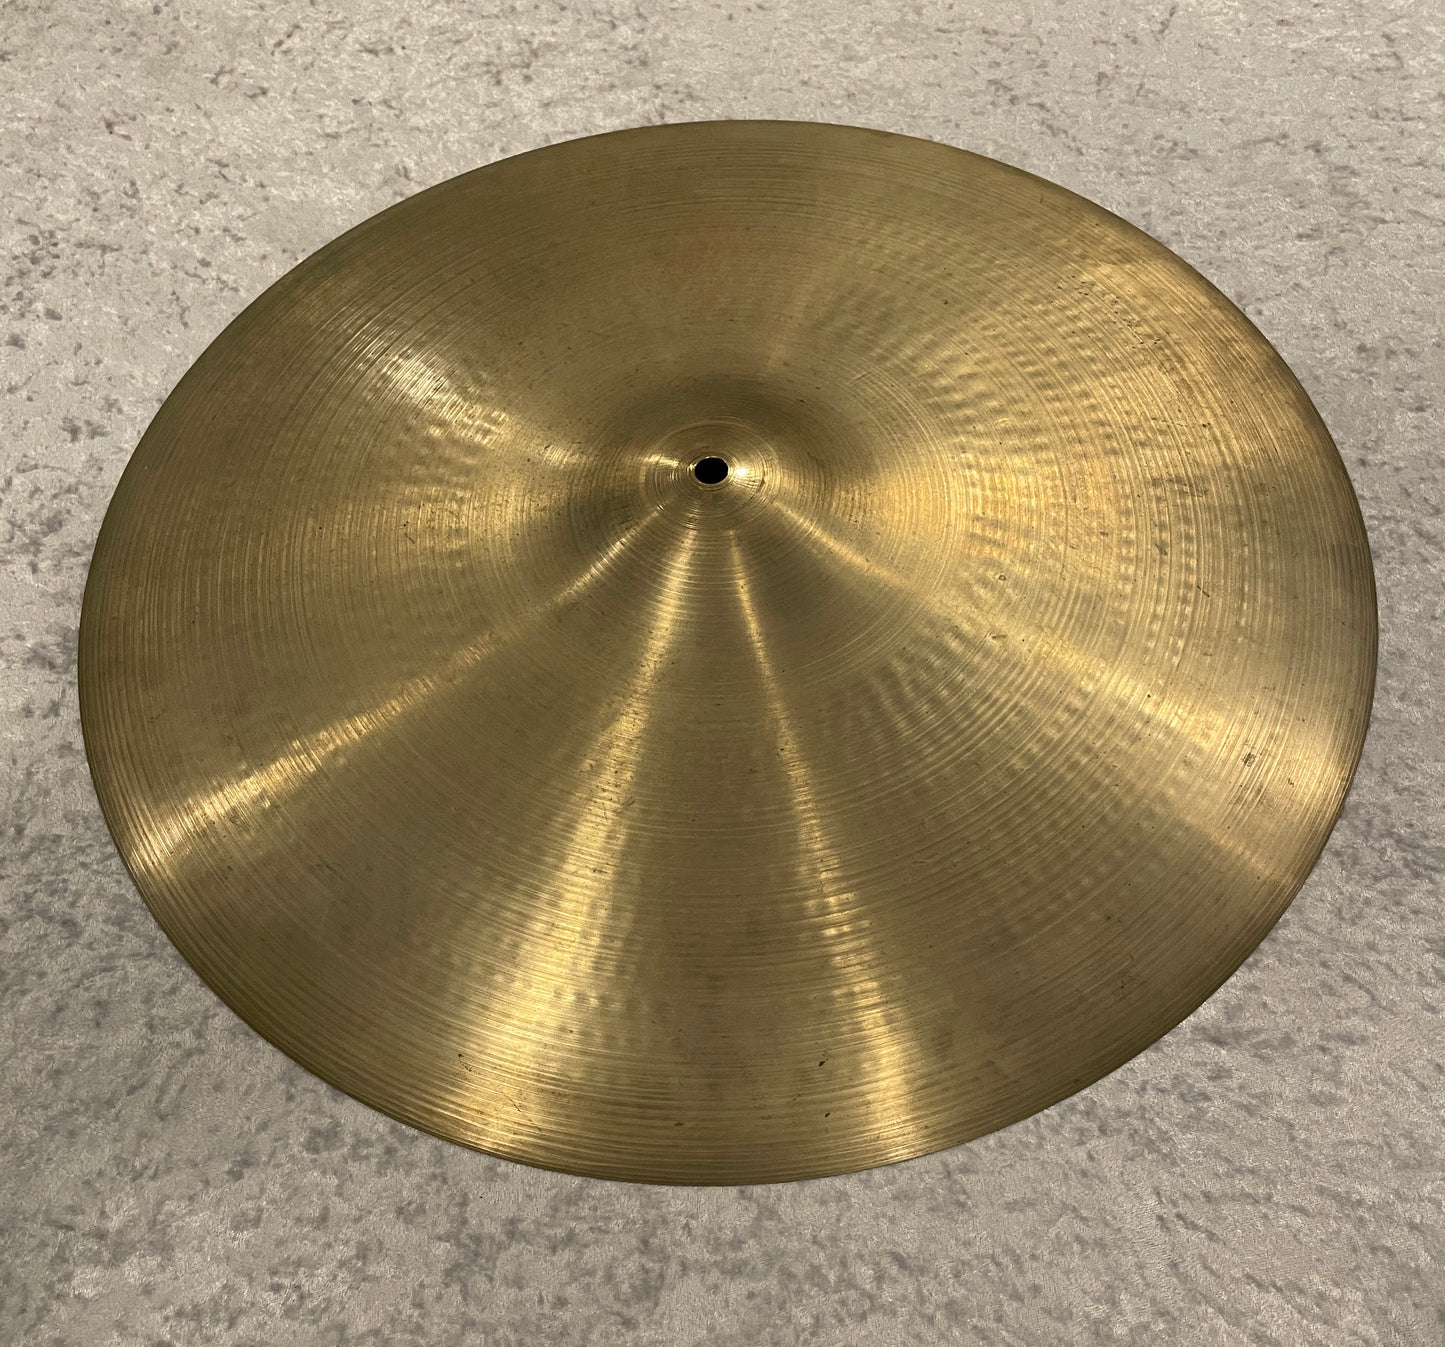 20" Zildjian A 1970s Ride Cymbal 2676g #786